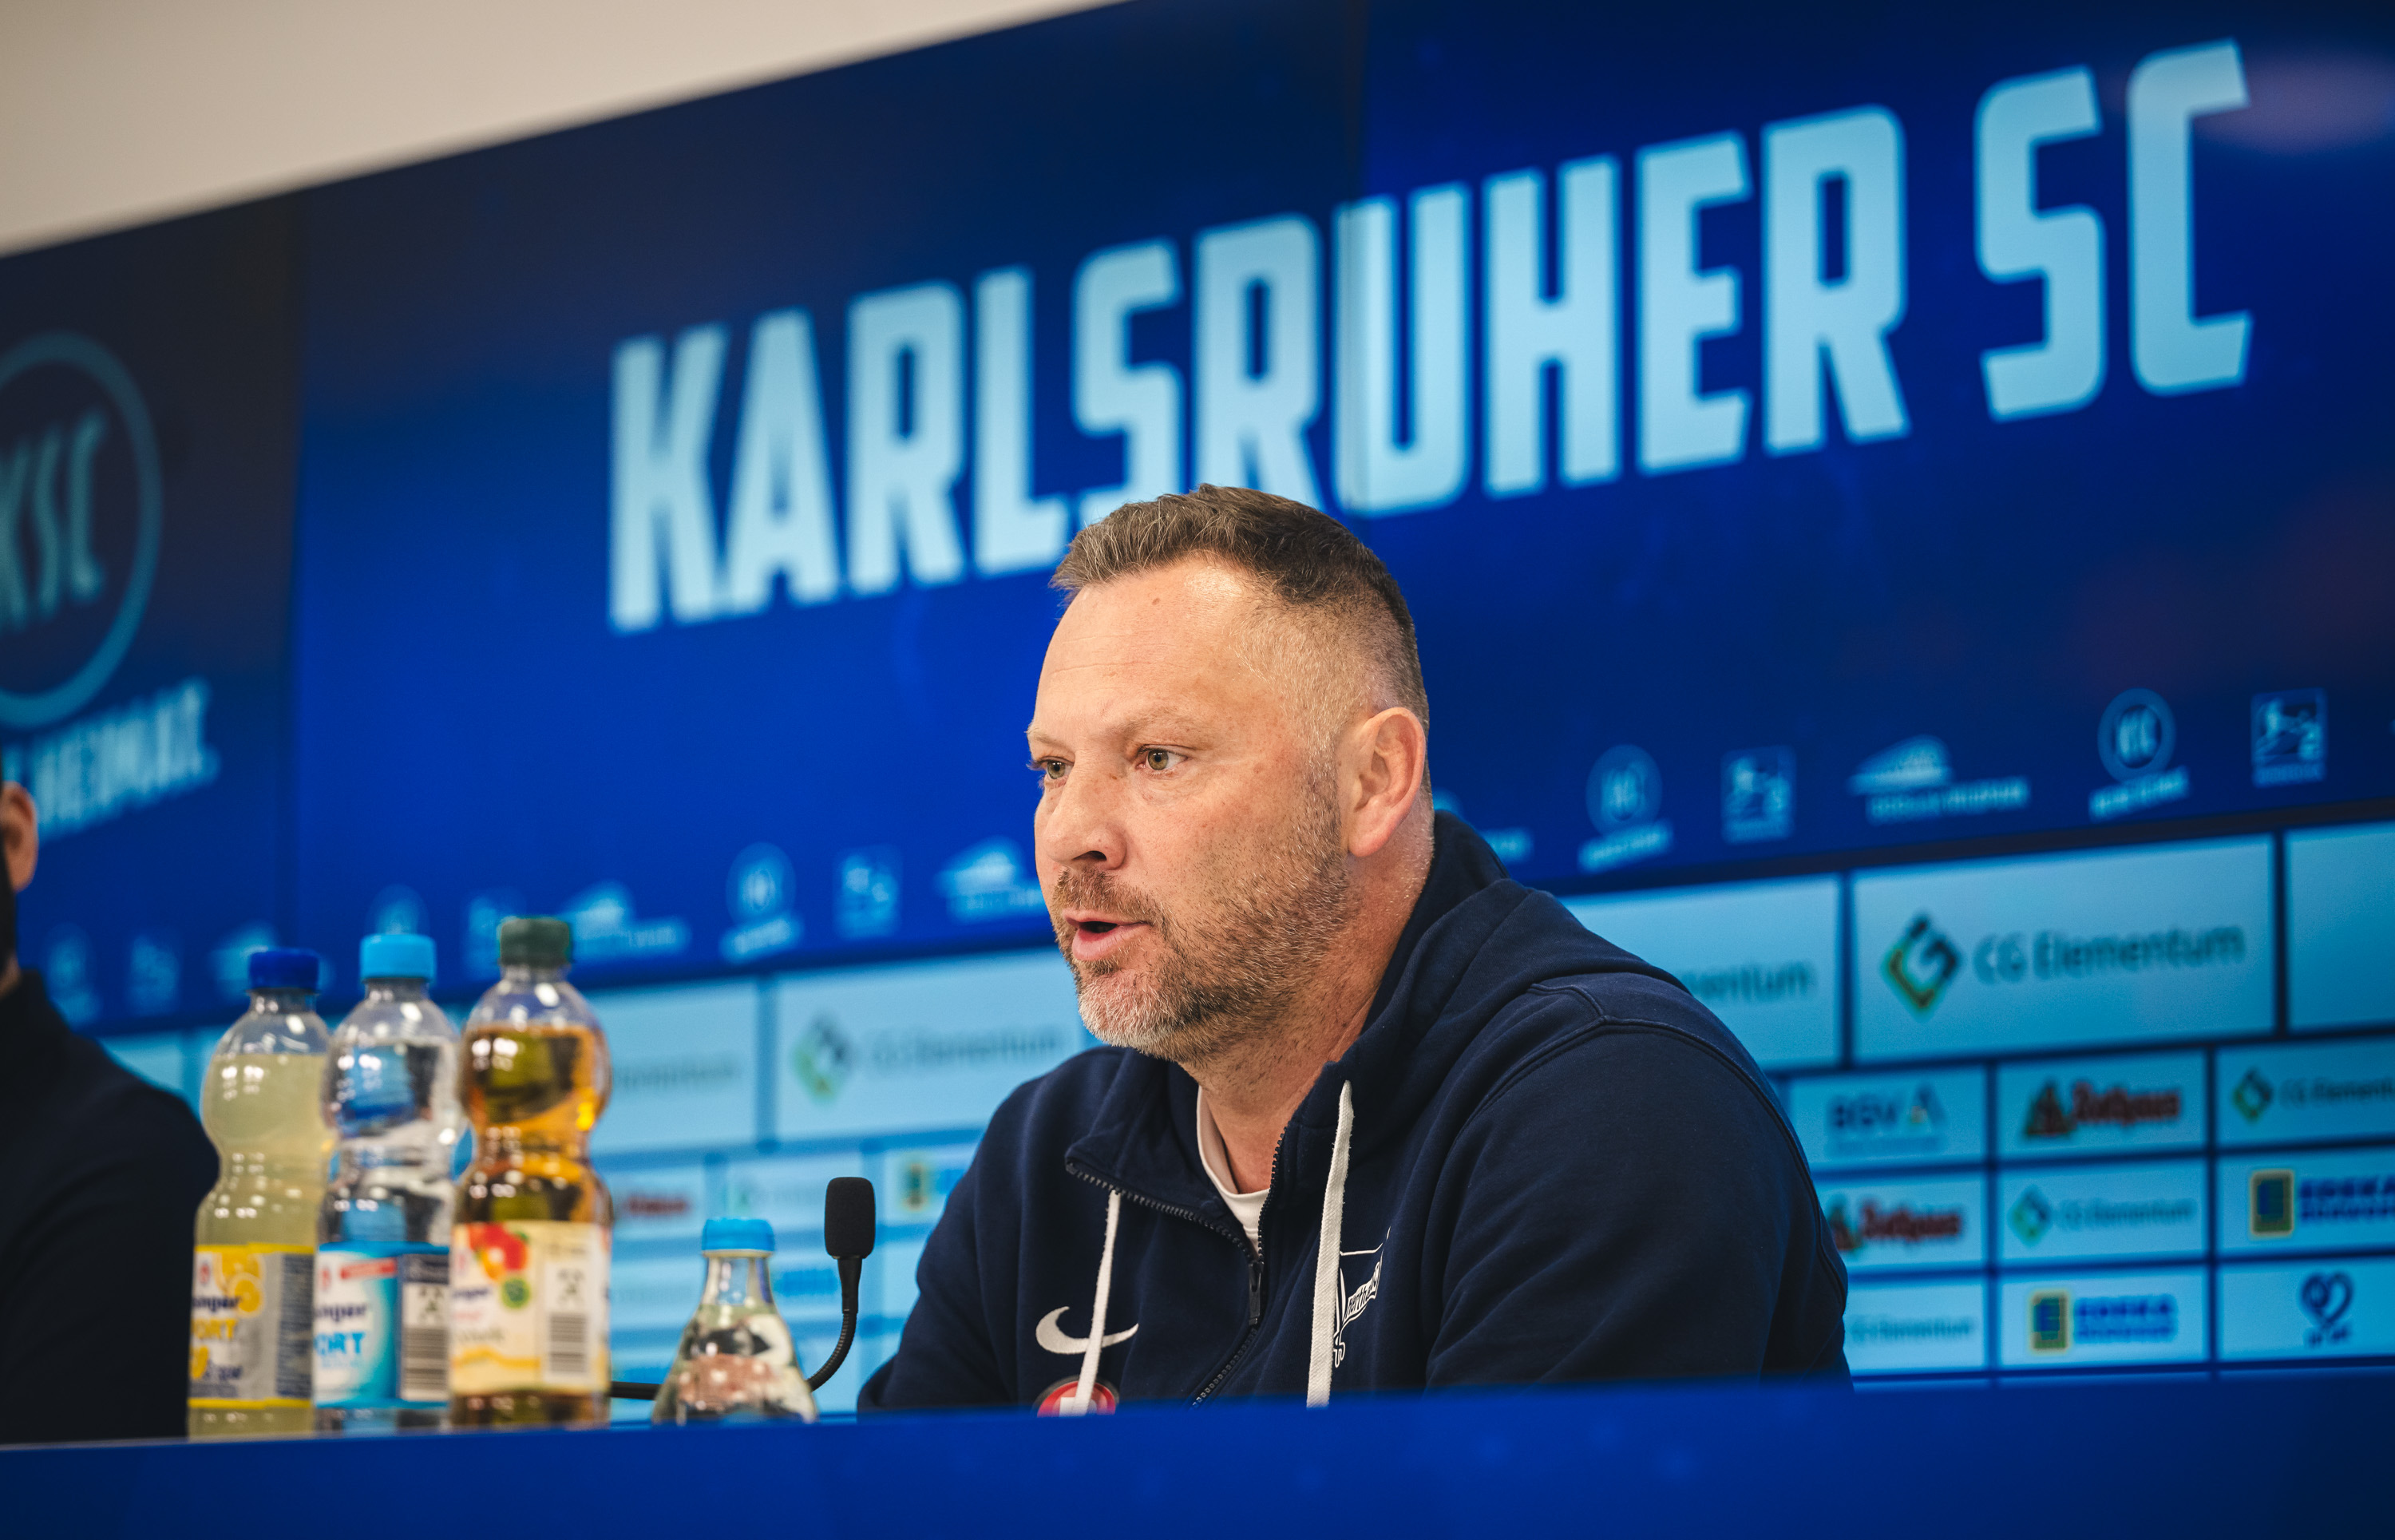 Pál Dárdai auf der Pressekonferenz nach dem Gastspiel in Karlsruhe.